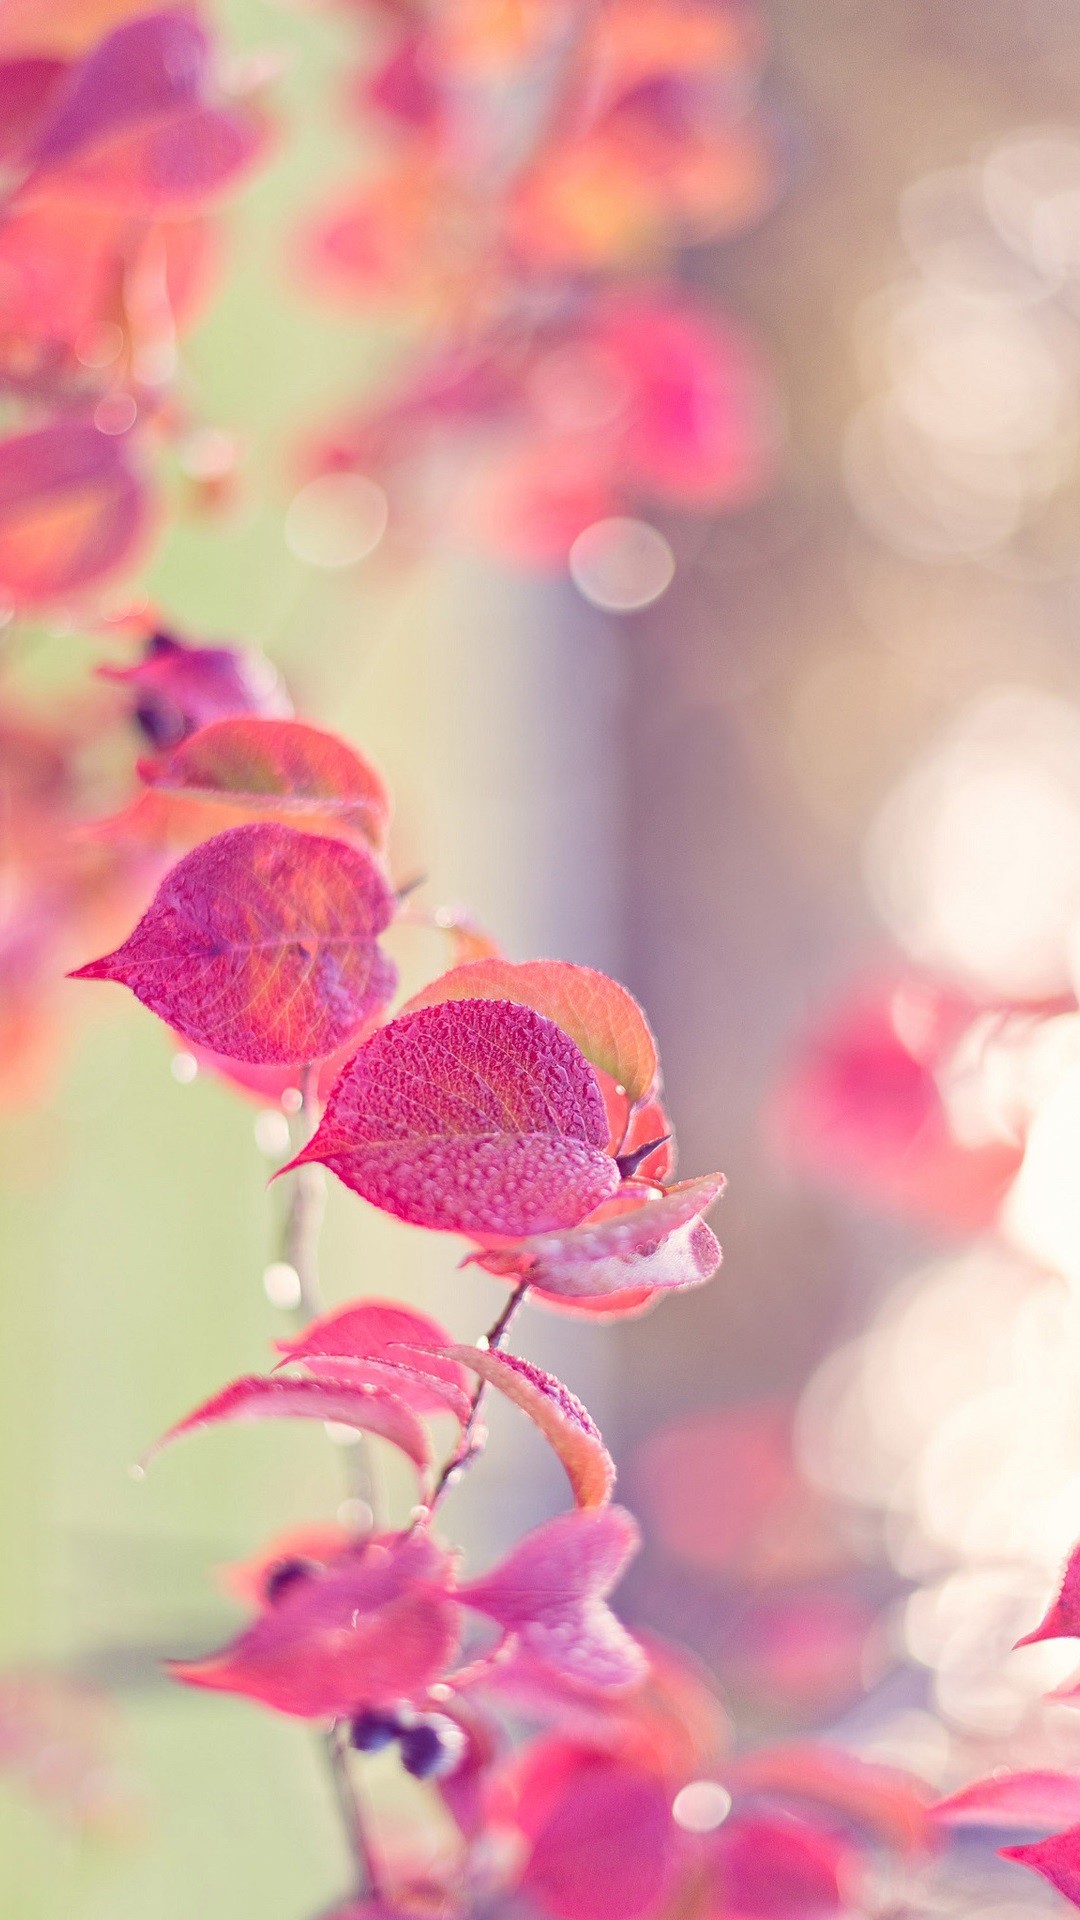 ピンク色の葉っぱ かわいいスマホ壁紙 Iphone Wallpapers